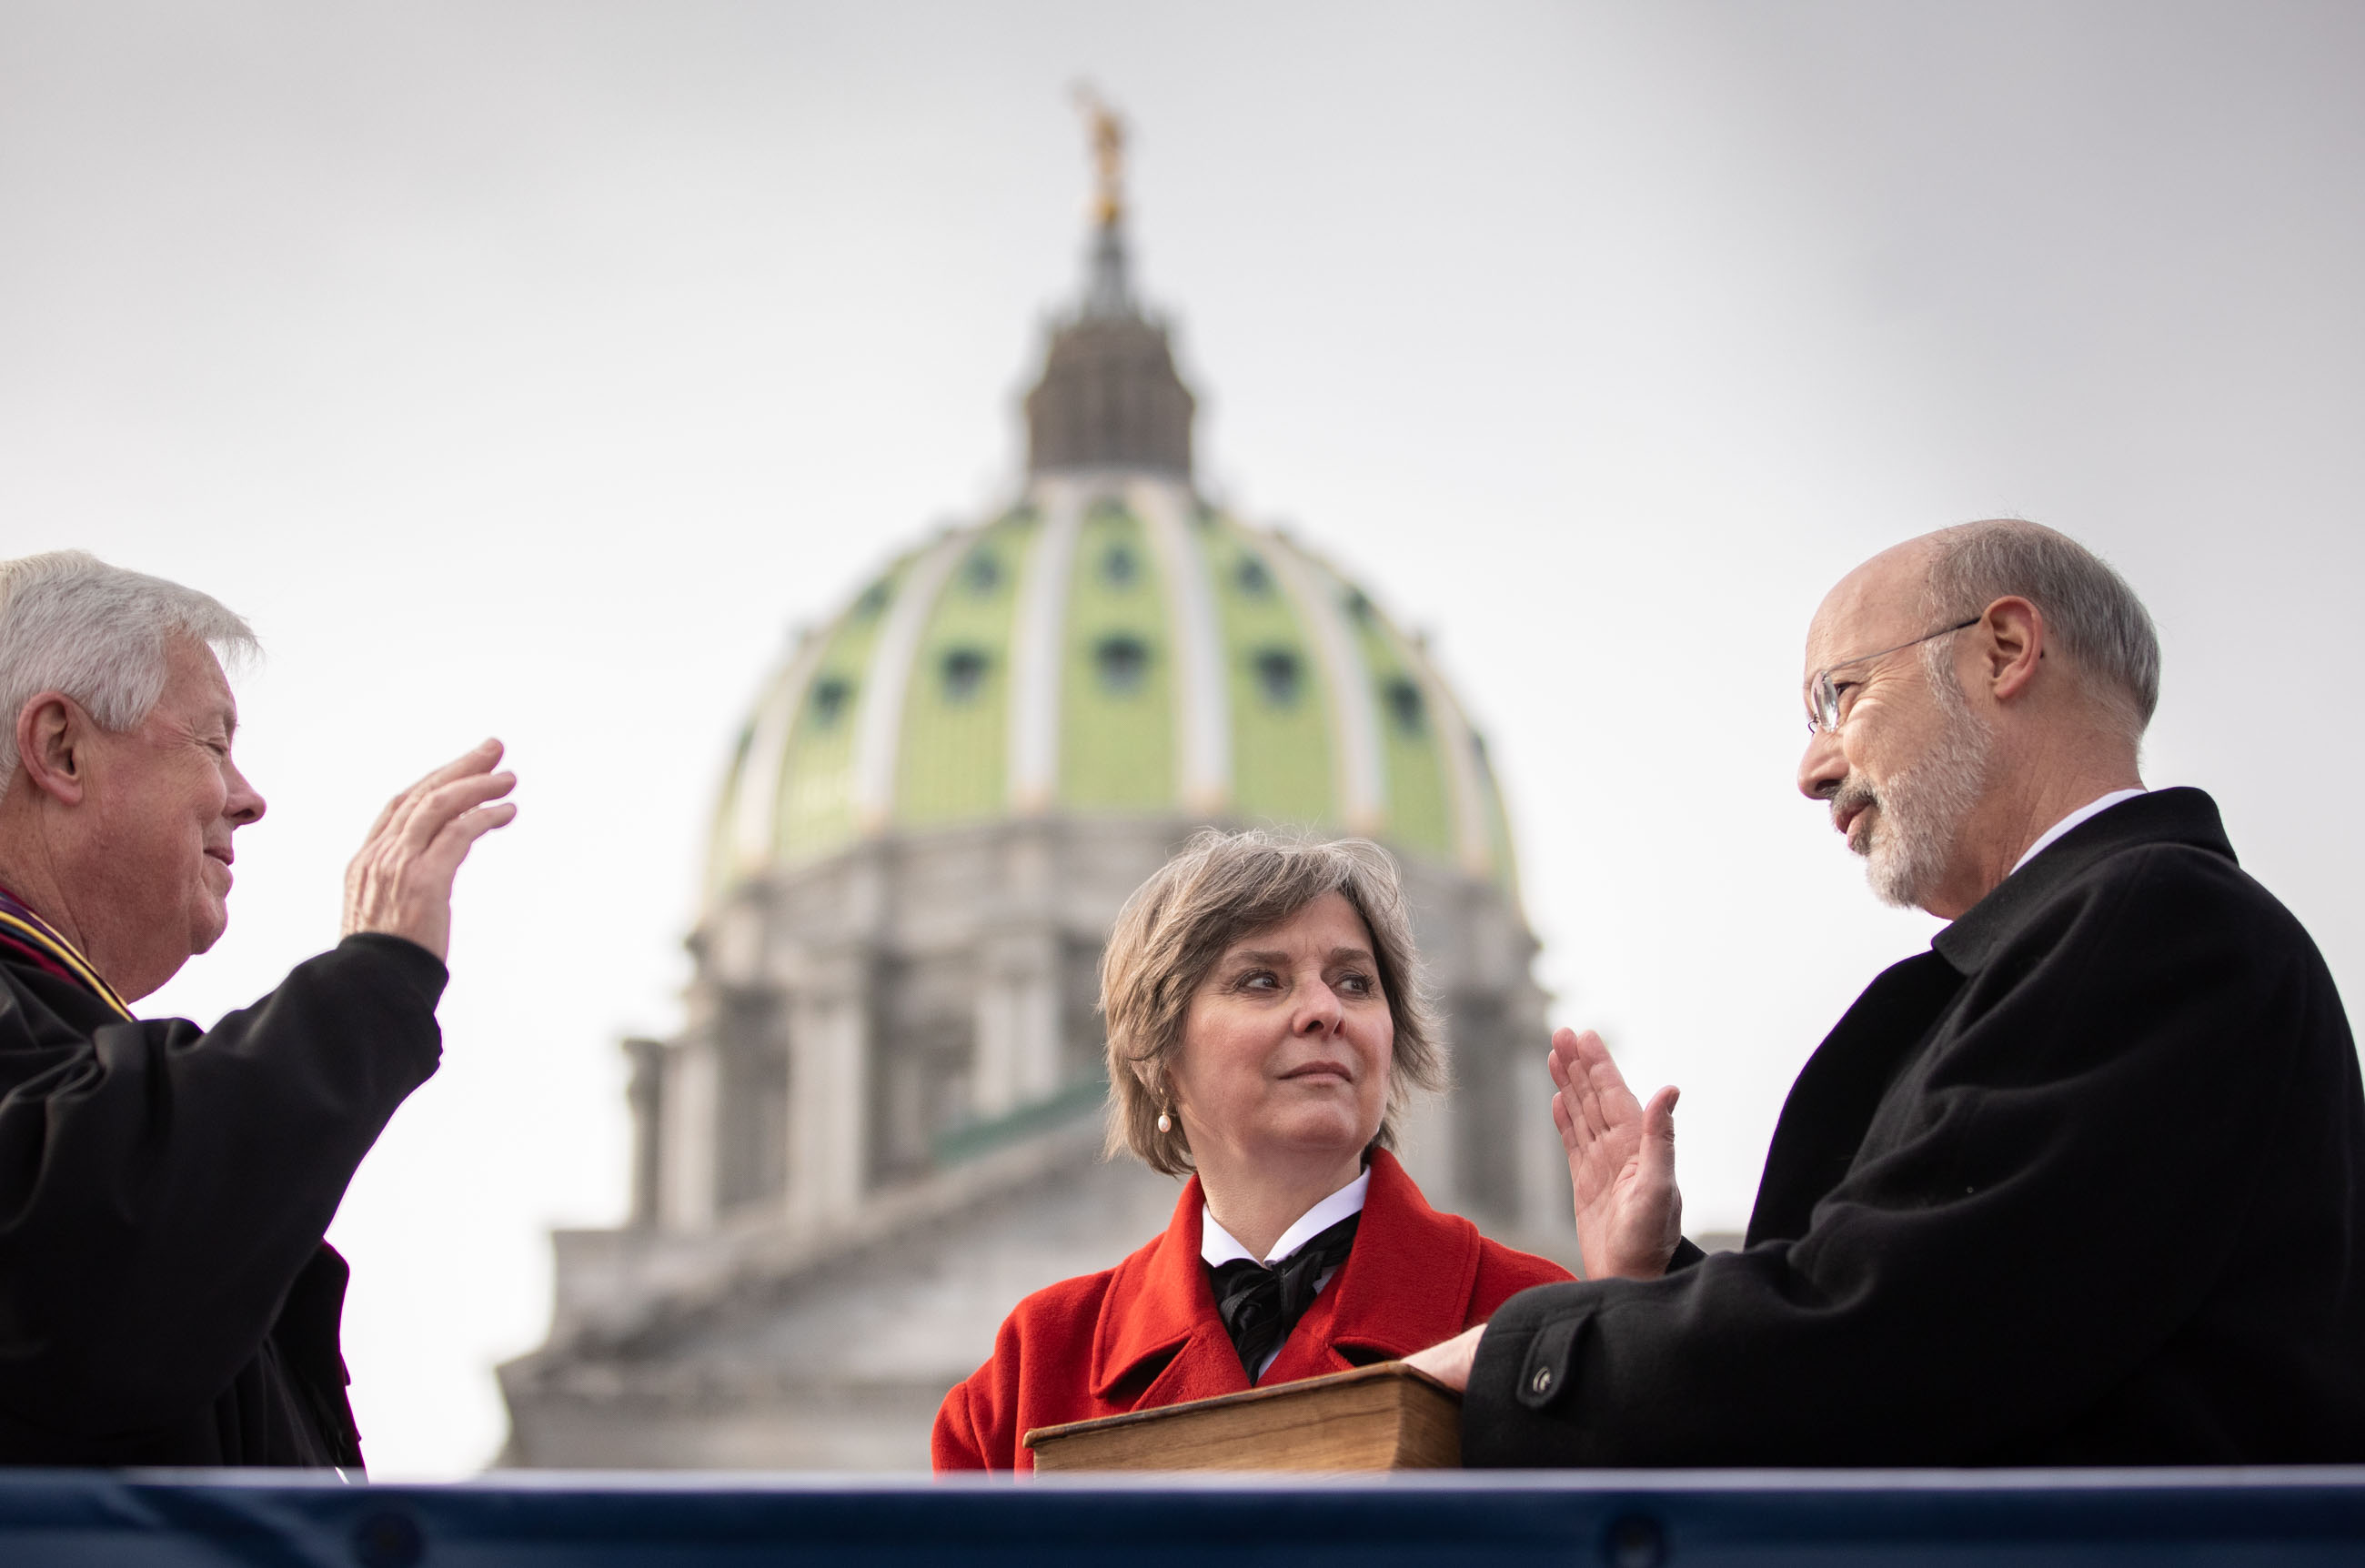 Gobernador Tom Wolf (derecha) con su esposa, Frances Wolf (izquierda) en la ceremonia de inauguración de Pensilvania el 15 de enero. Foto: Oficina del Gobernador de PA.